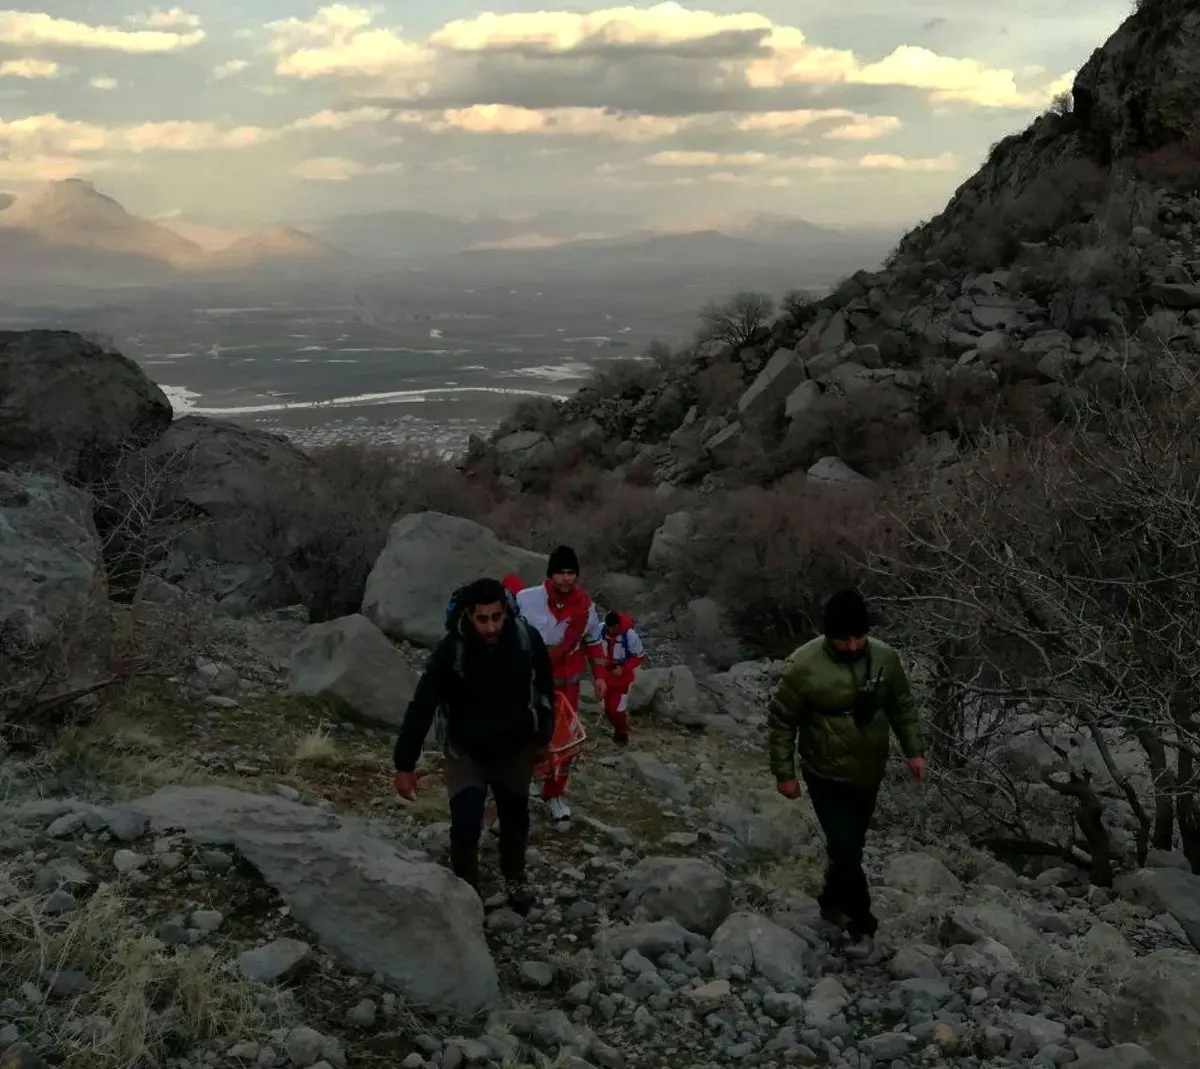 سقوط دلخراش کوهنورد ۶۴ساله از ارتفاعات پرآو+عکس